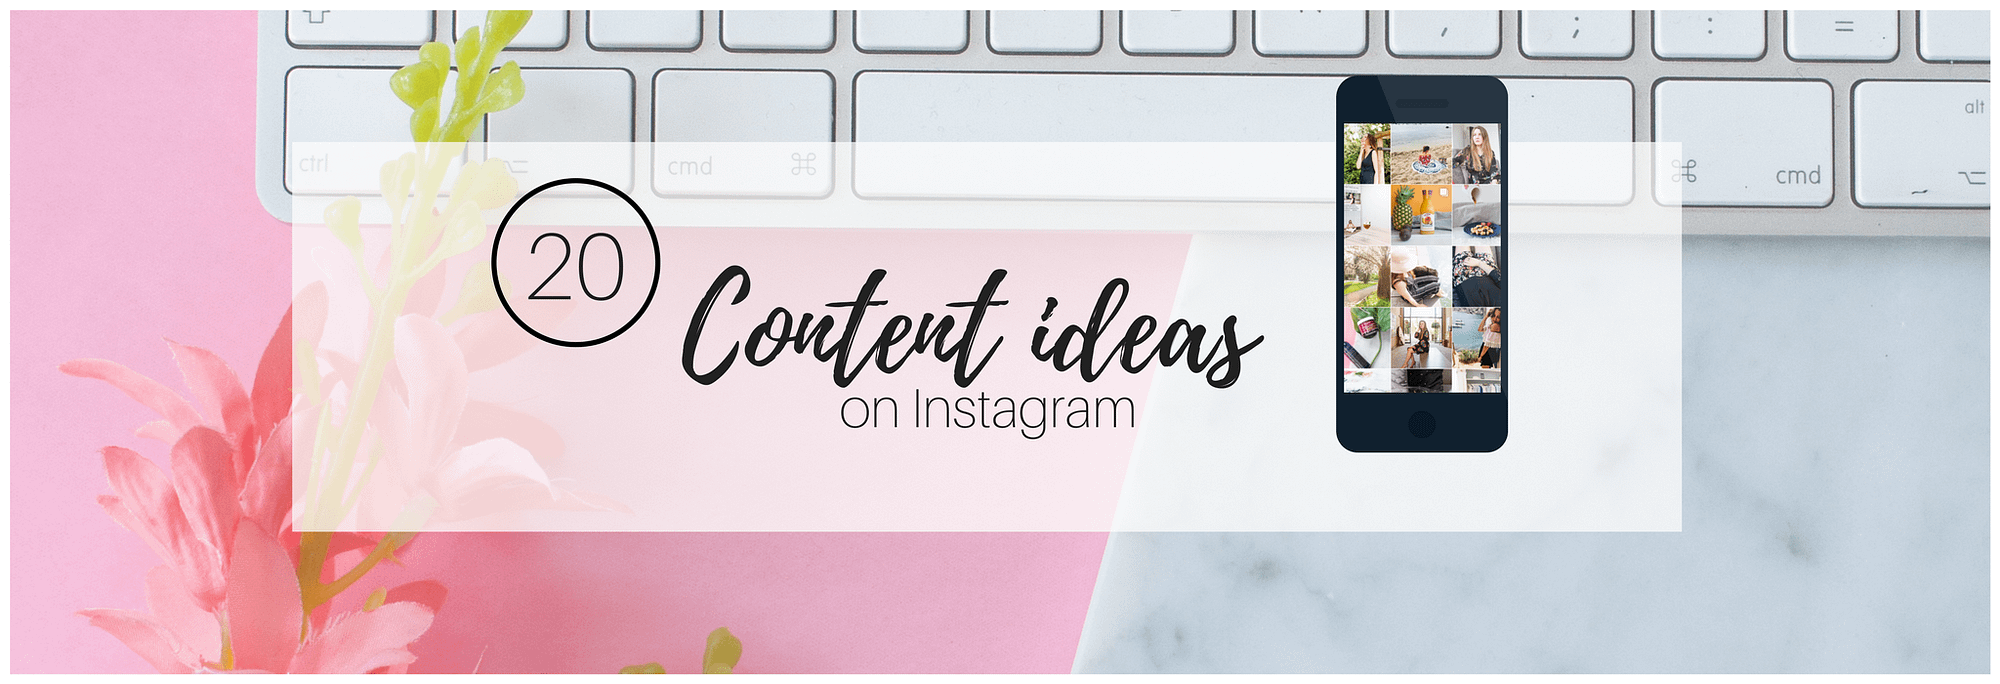 Content ideas social media